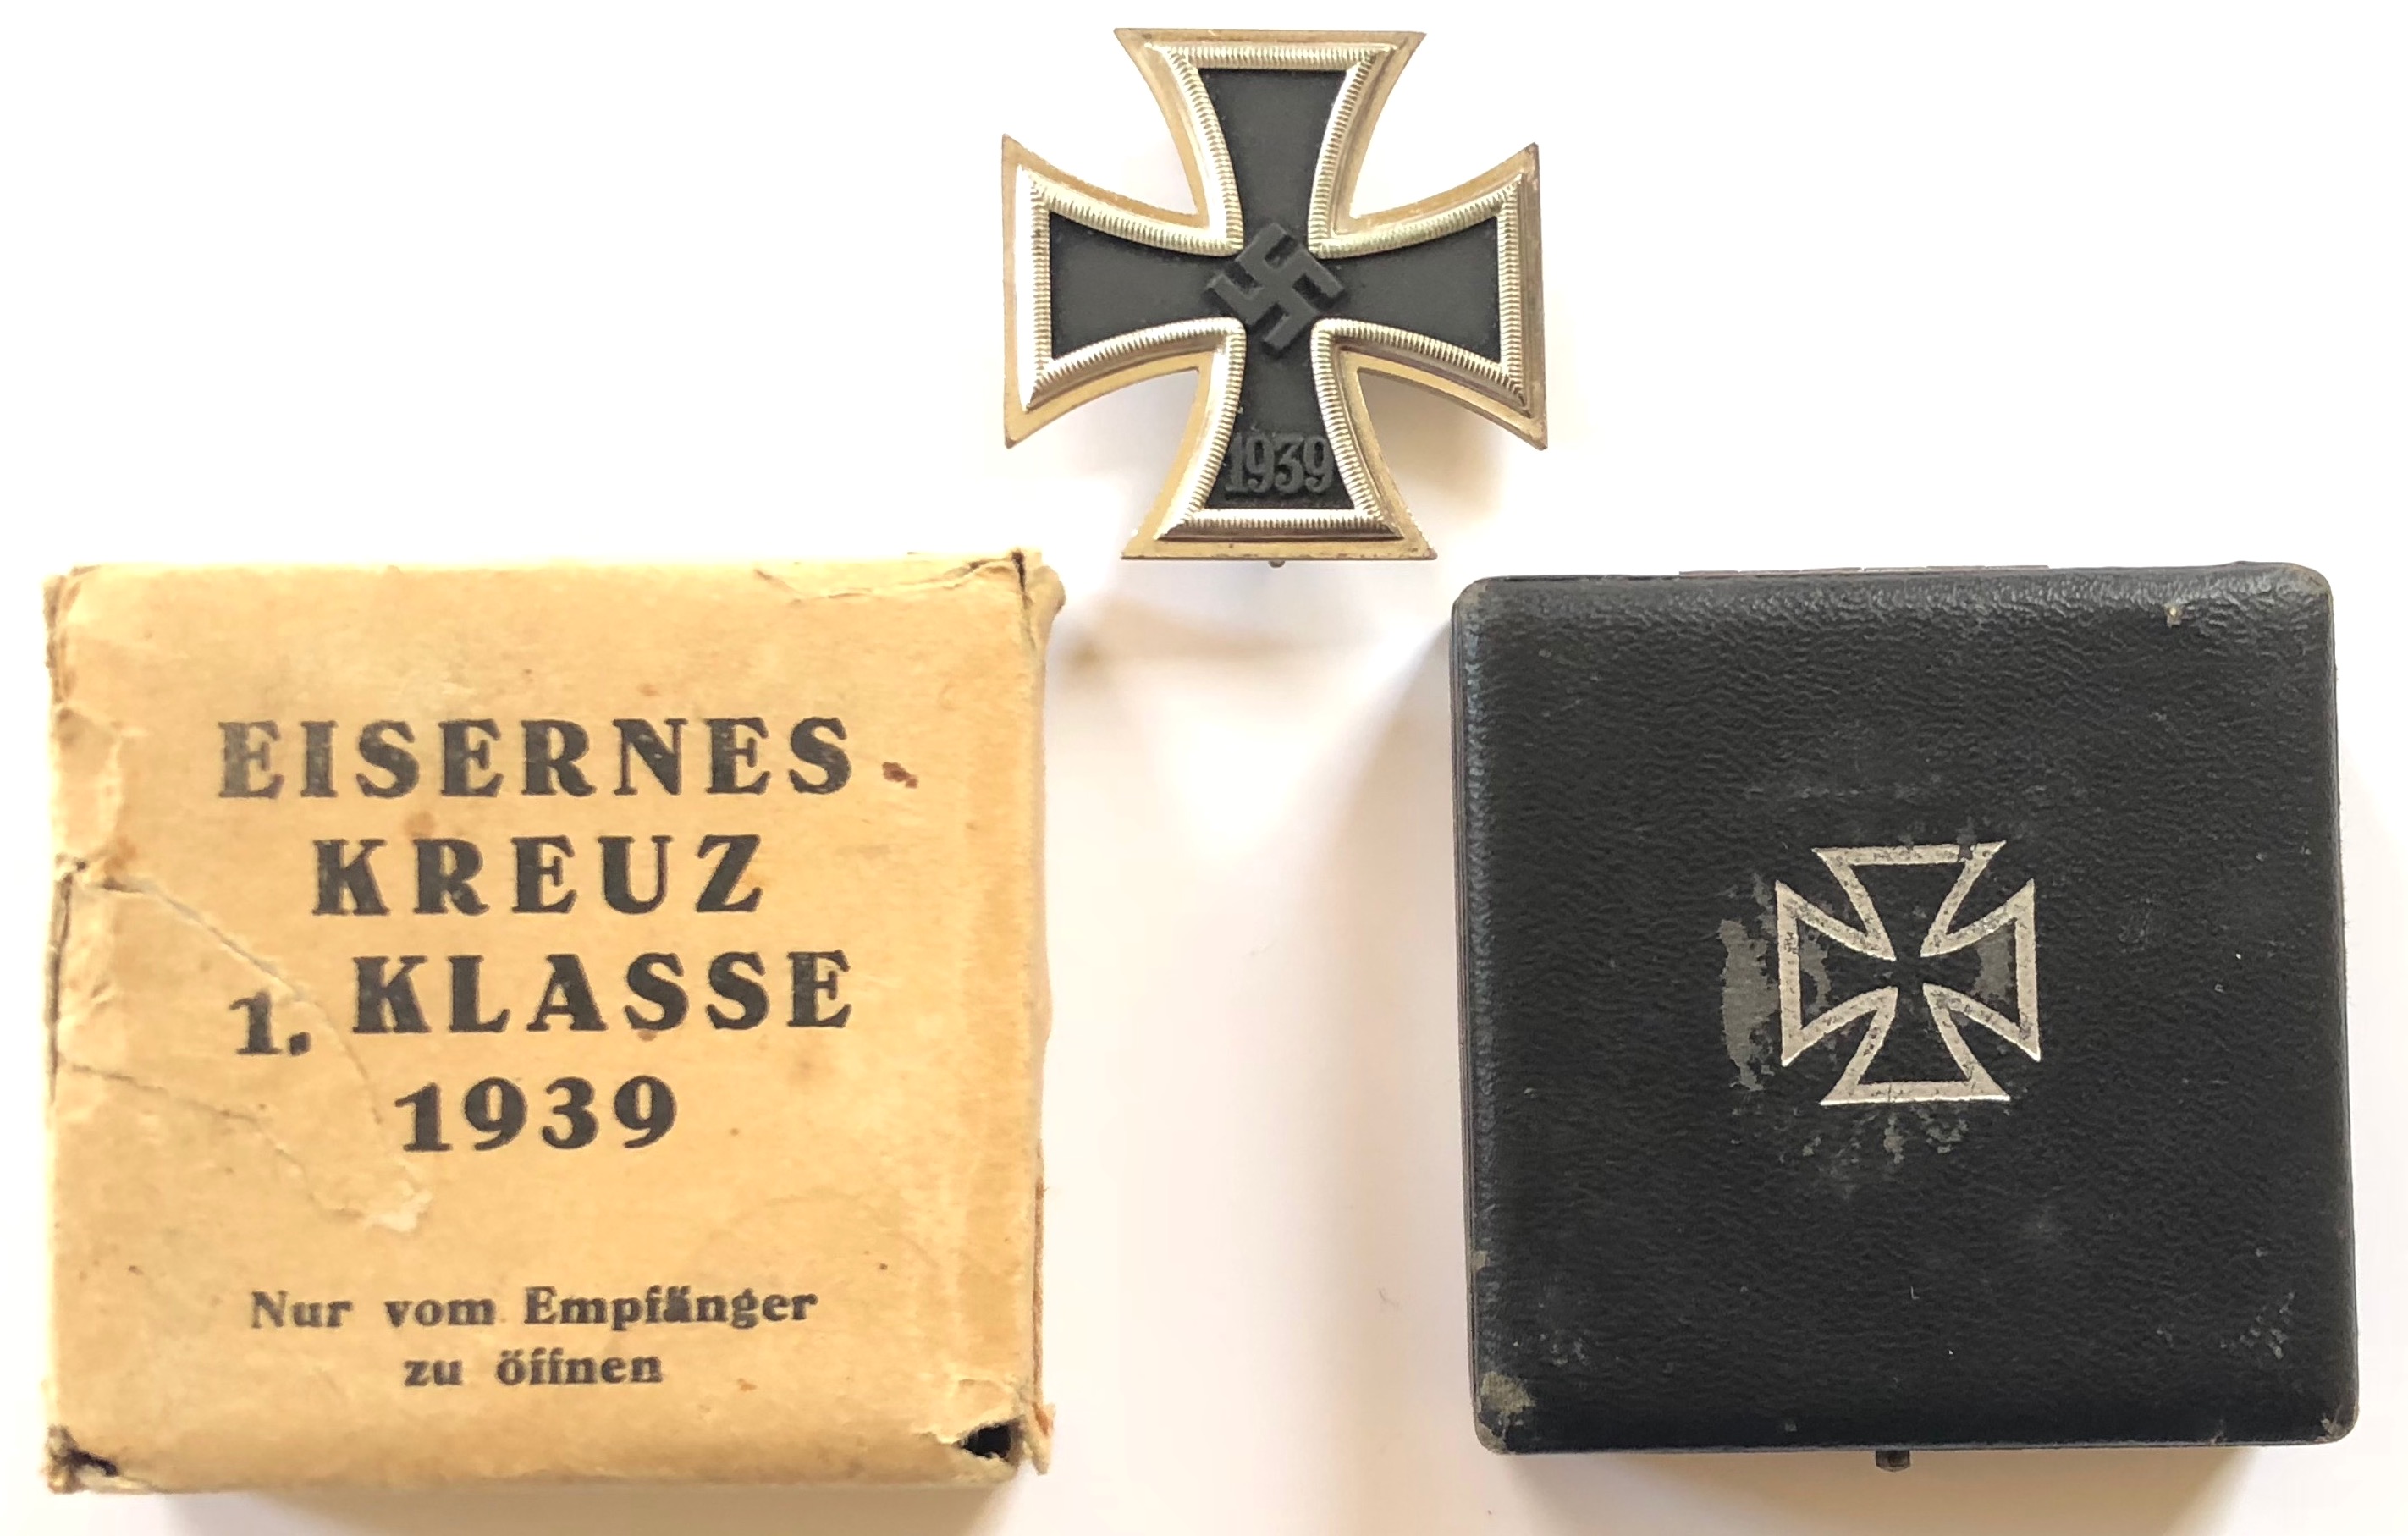 German Third Reich 1939 Iron Cross 1st Class in case of issue by Klein & Quenzer, Idar/Oberstein.